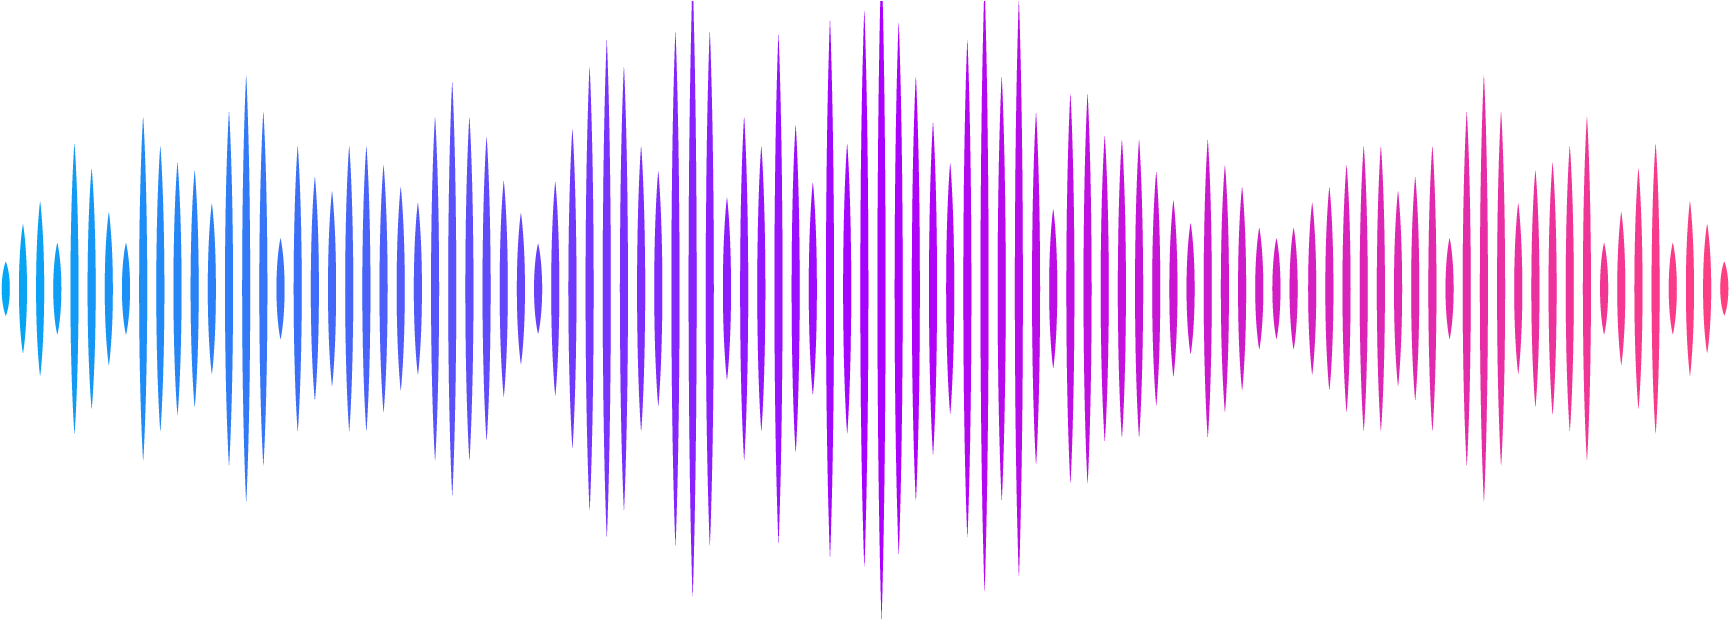 Звук удара по воздуху. Звуковая волна. Звуковая дорожка. Графическое изображение звука. Звуковая волна эквалайзер.